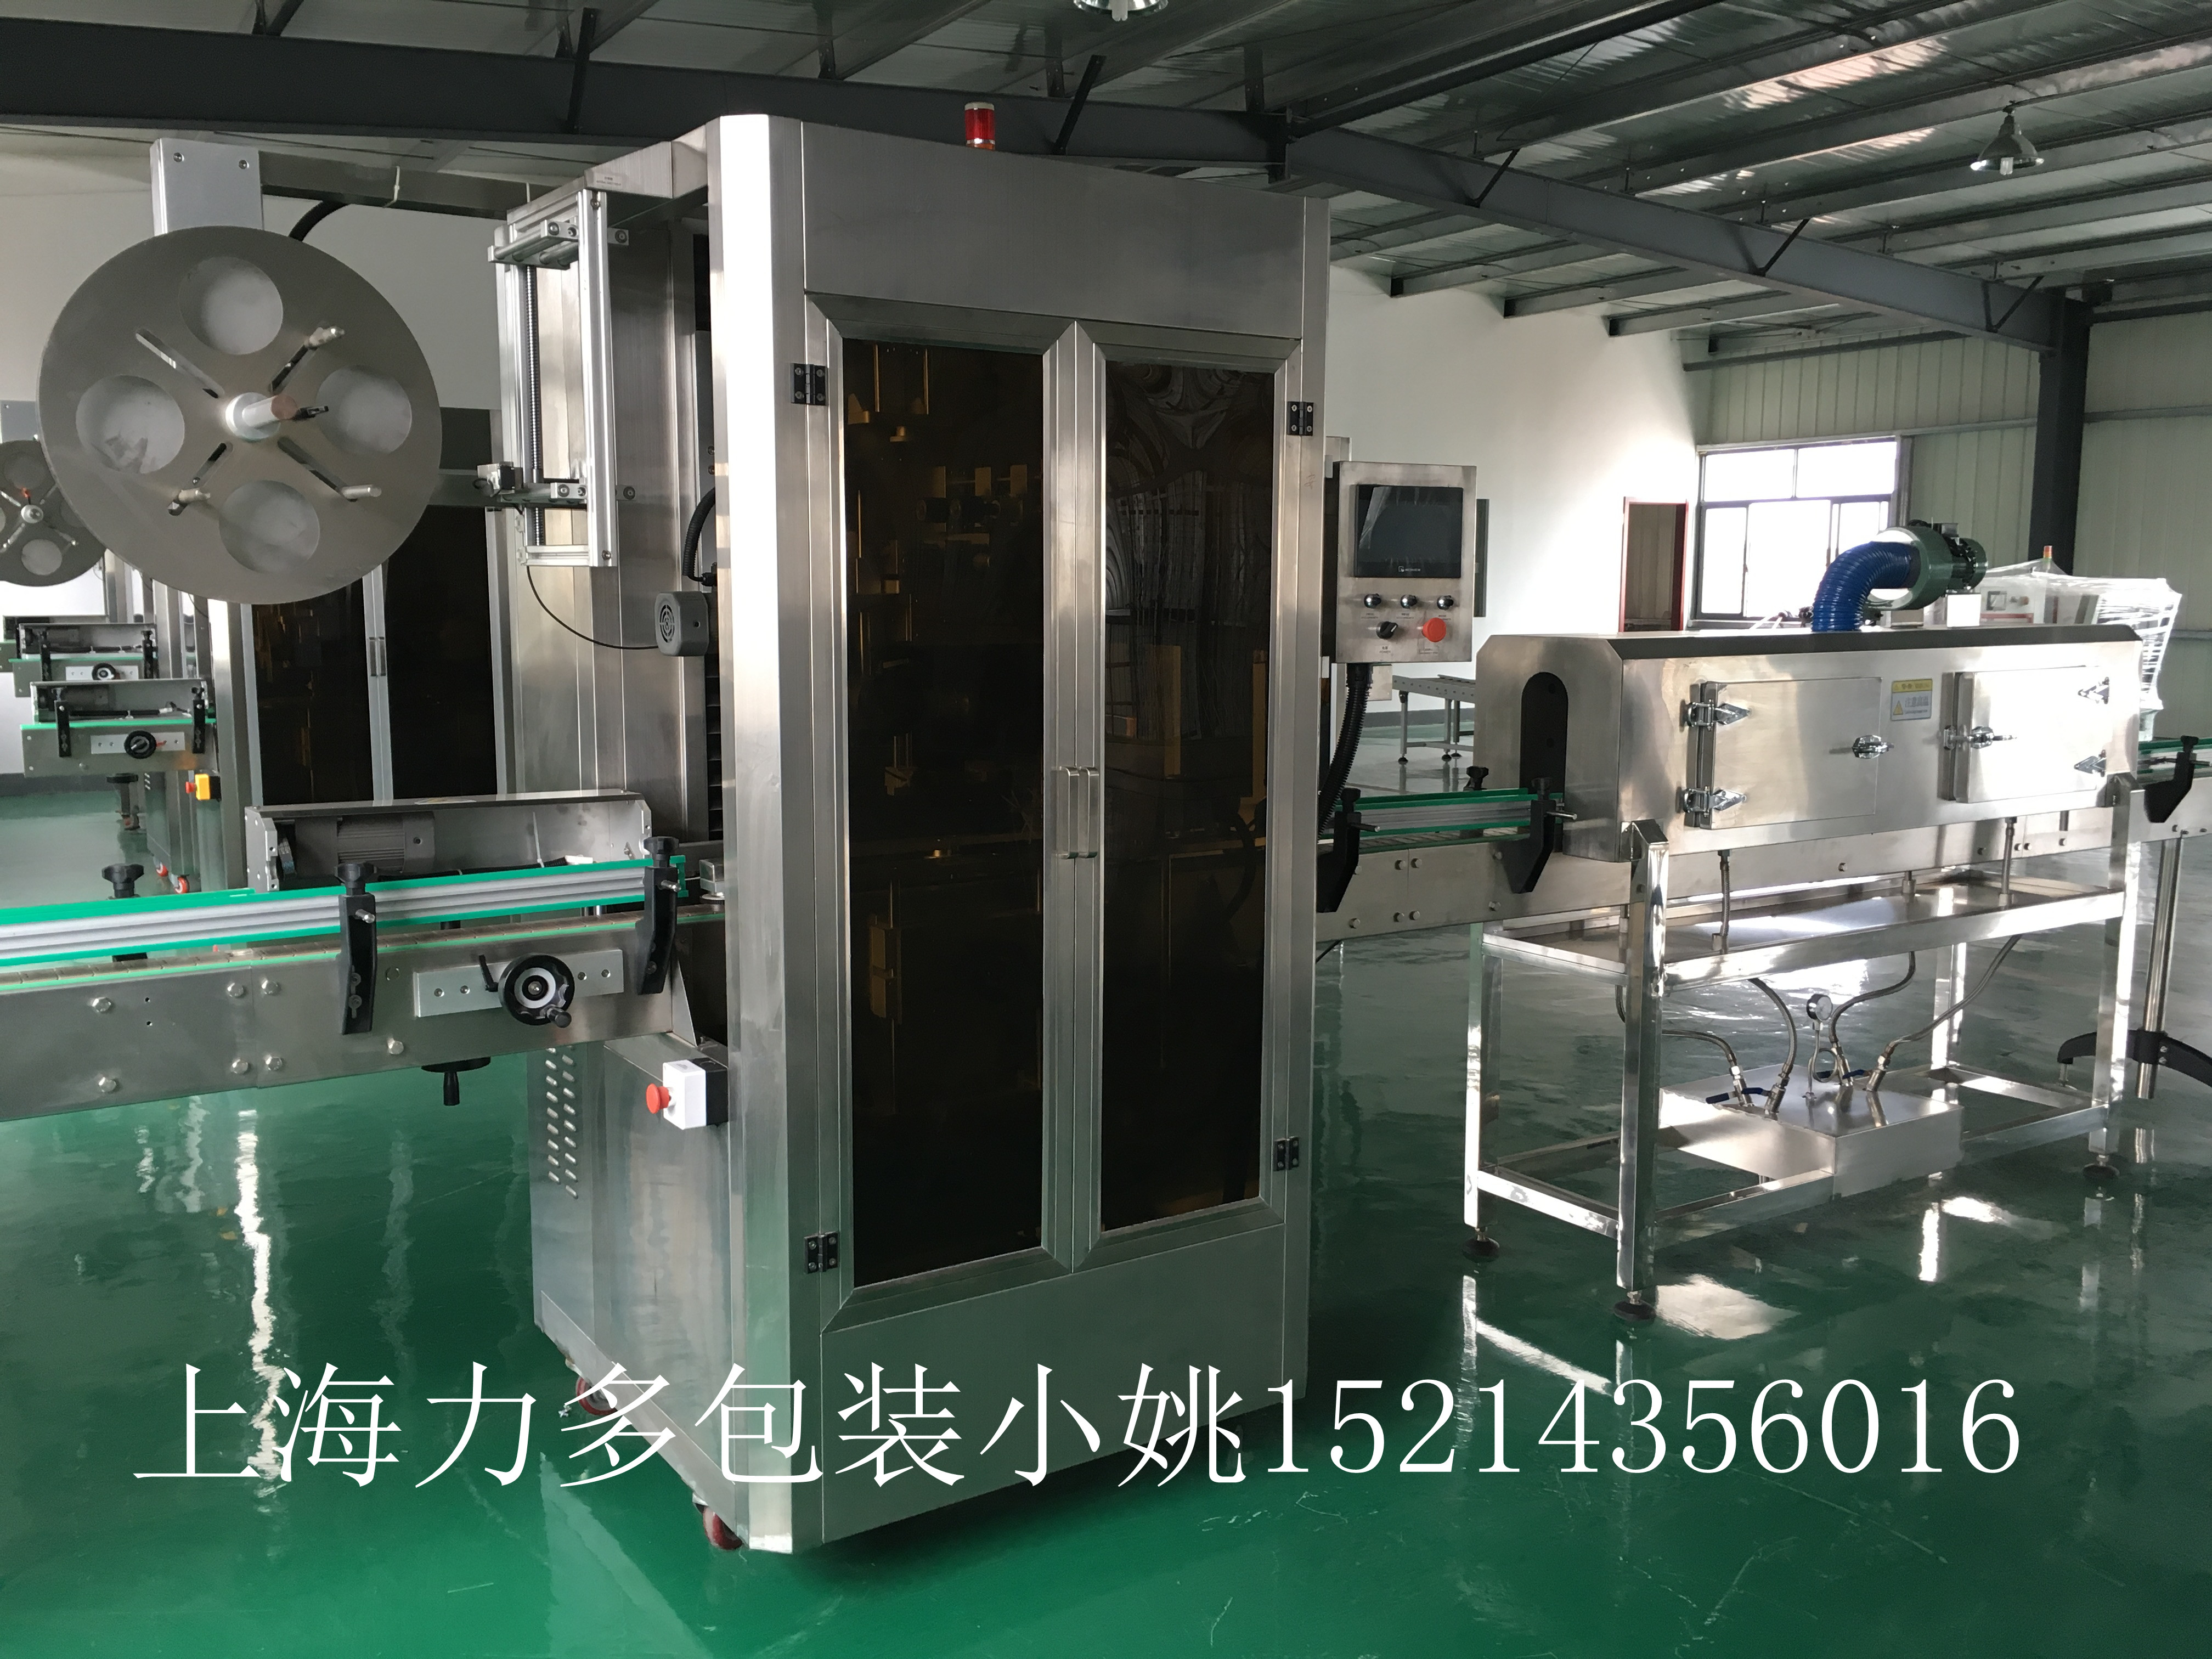 上海市自动套标机厂家自动装箱机 自动套标机